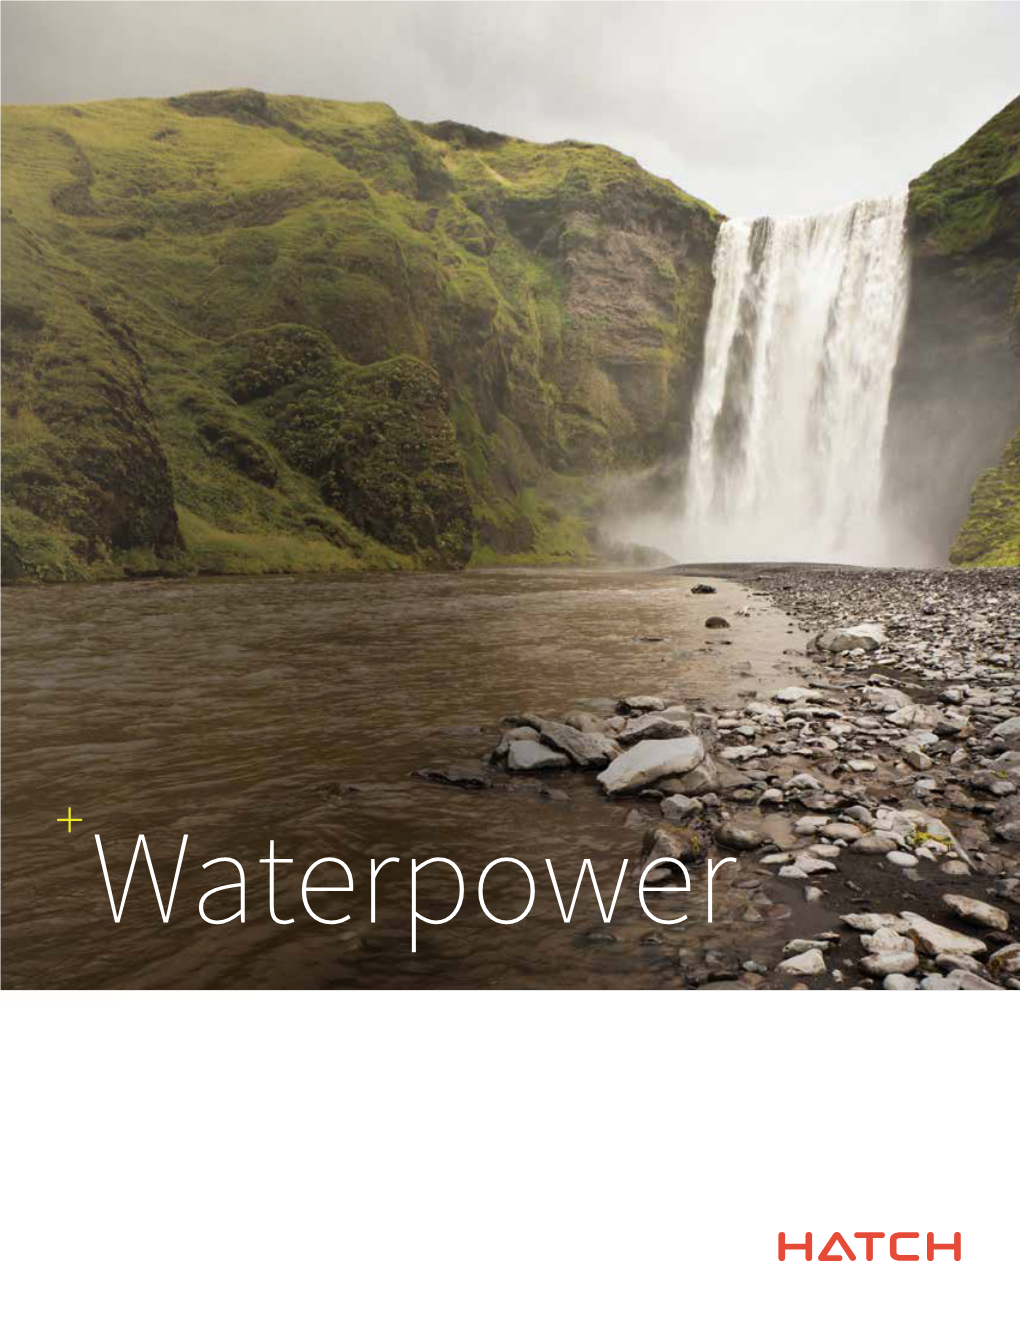 Waterpower Brochure.Pdf